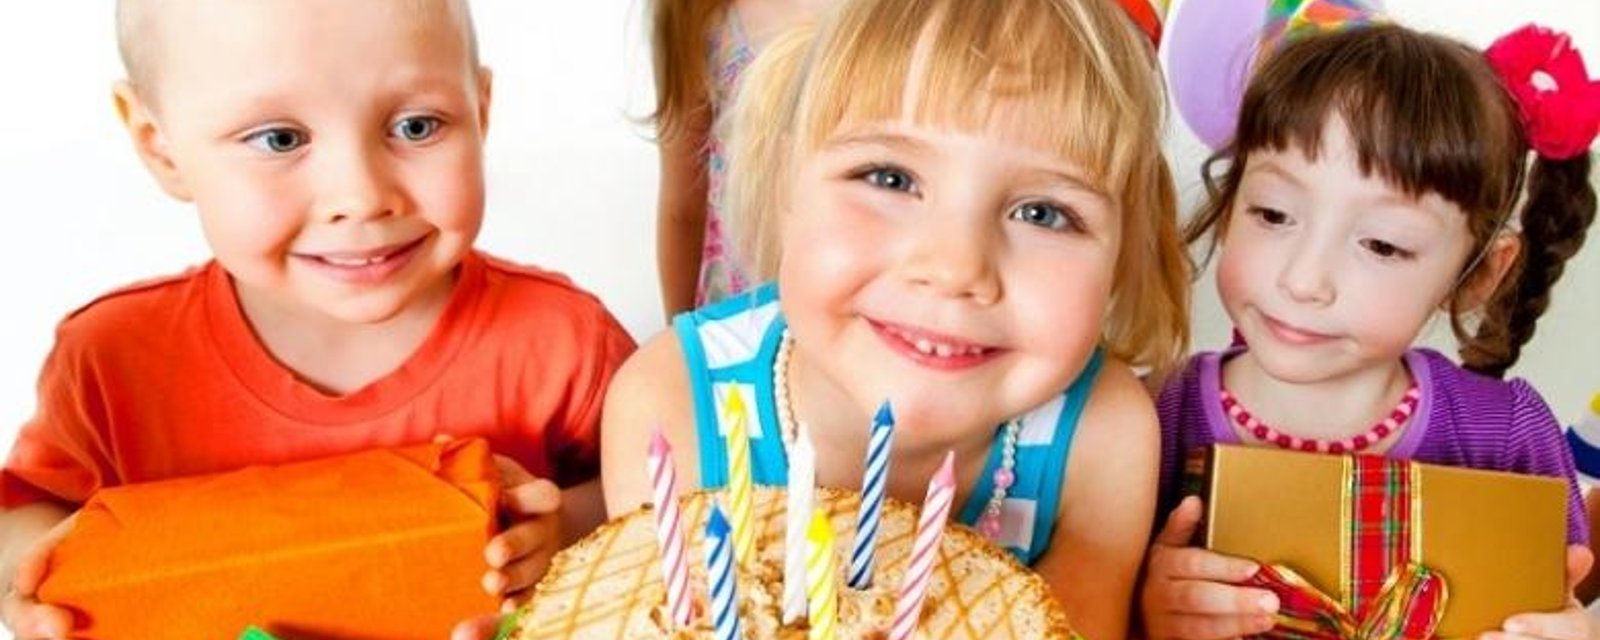 10 idées géniales pour souligner l'anniversaire de votre enfant!